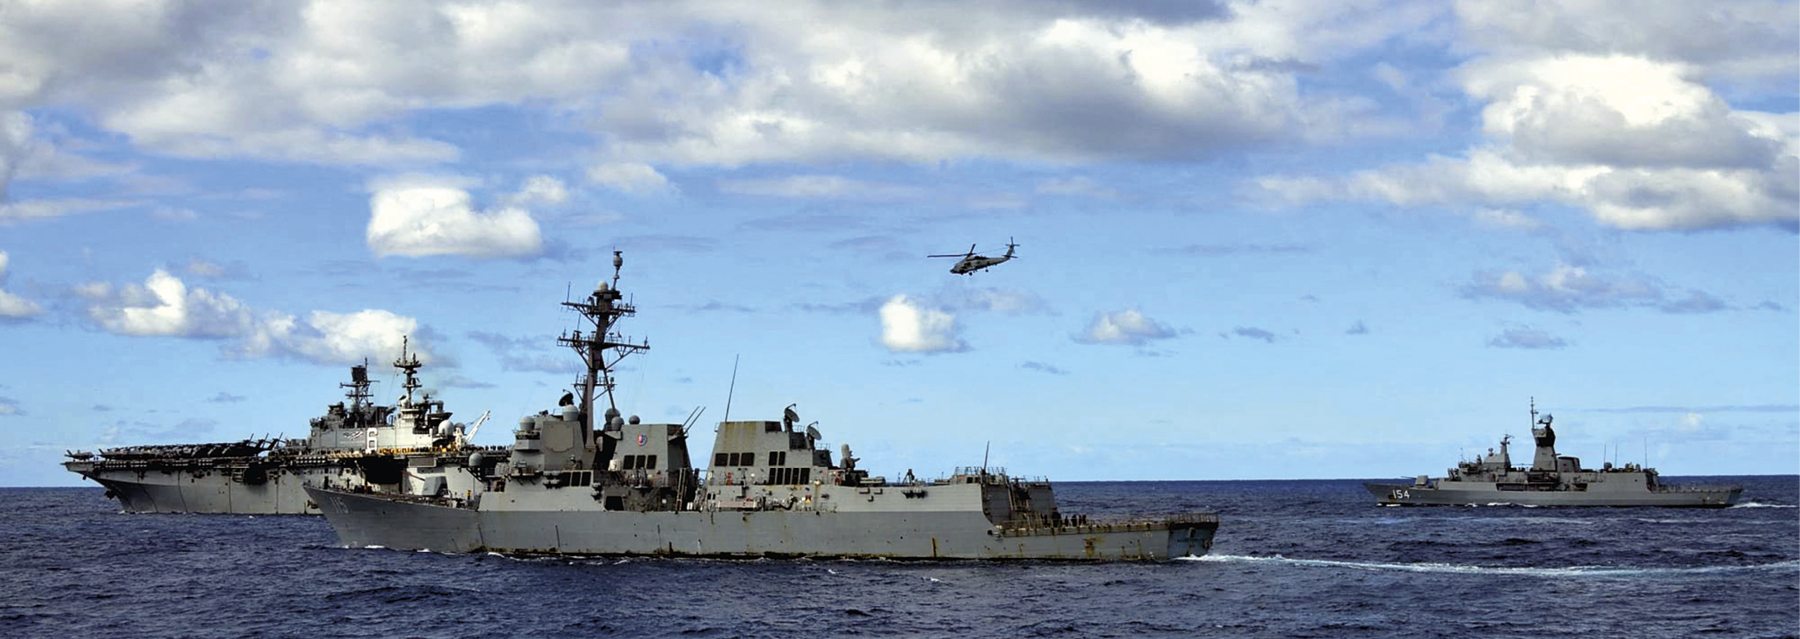 Fotografia. Vista do mar com destaque para três embarcações militares em tons de cinza com janelas e torres com antenas. Acima, o céu azul com nuvens e um helicóptero sobrevoando próximo às embarcações.